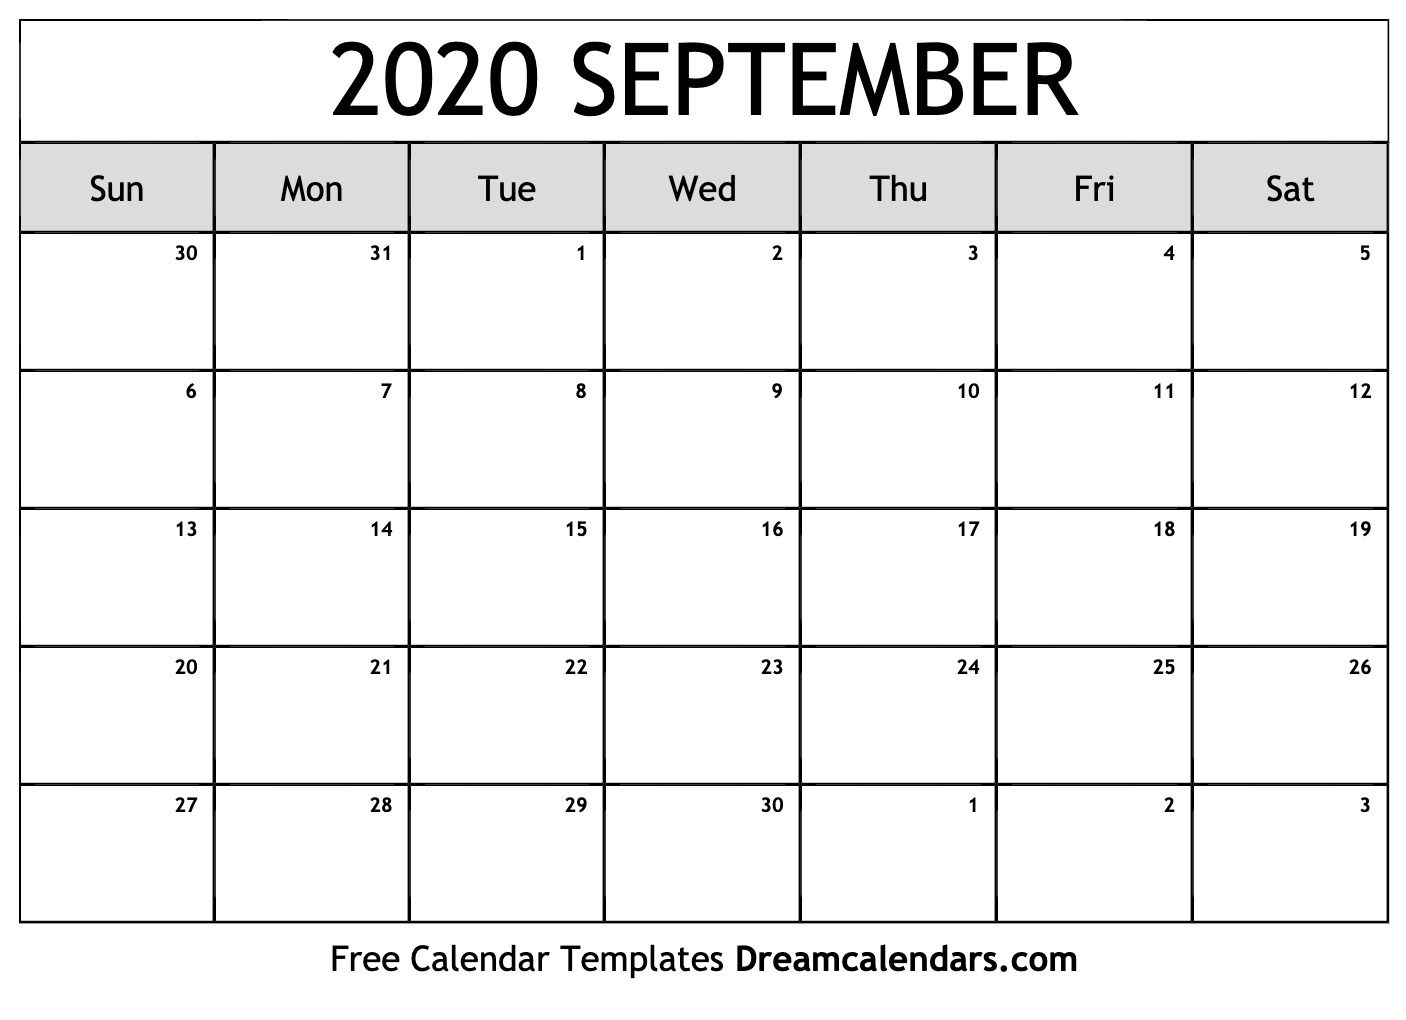 September 2020 Calendar Wallpapers   Top September 2020 1406x1020